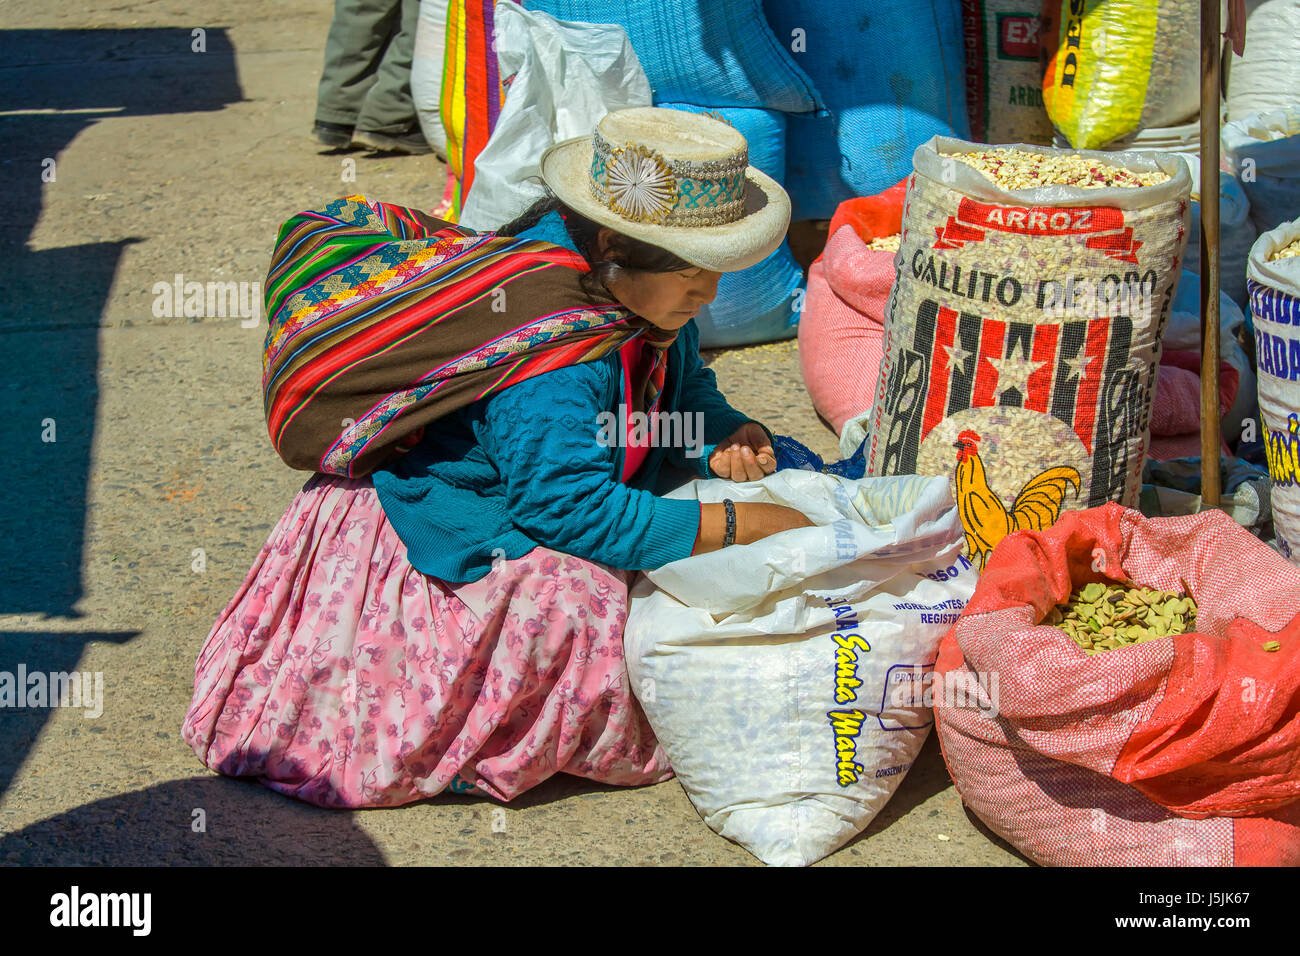 Les femmes en costume traditionnel de l'alimentation à l'essai sur le marché dans les andes au Pérou. Pisac est bien connu pour son marché qui attire des touris Banque D'Images